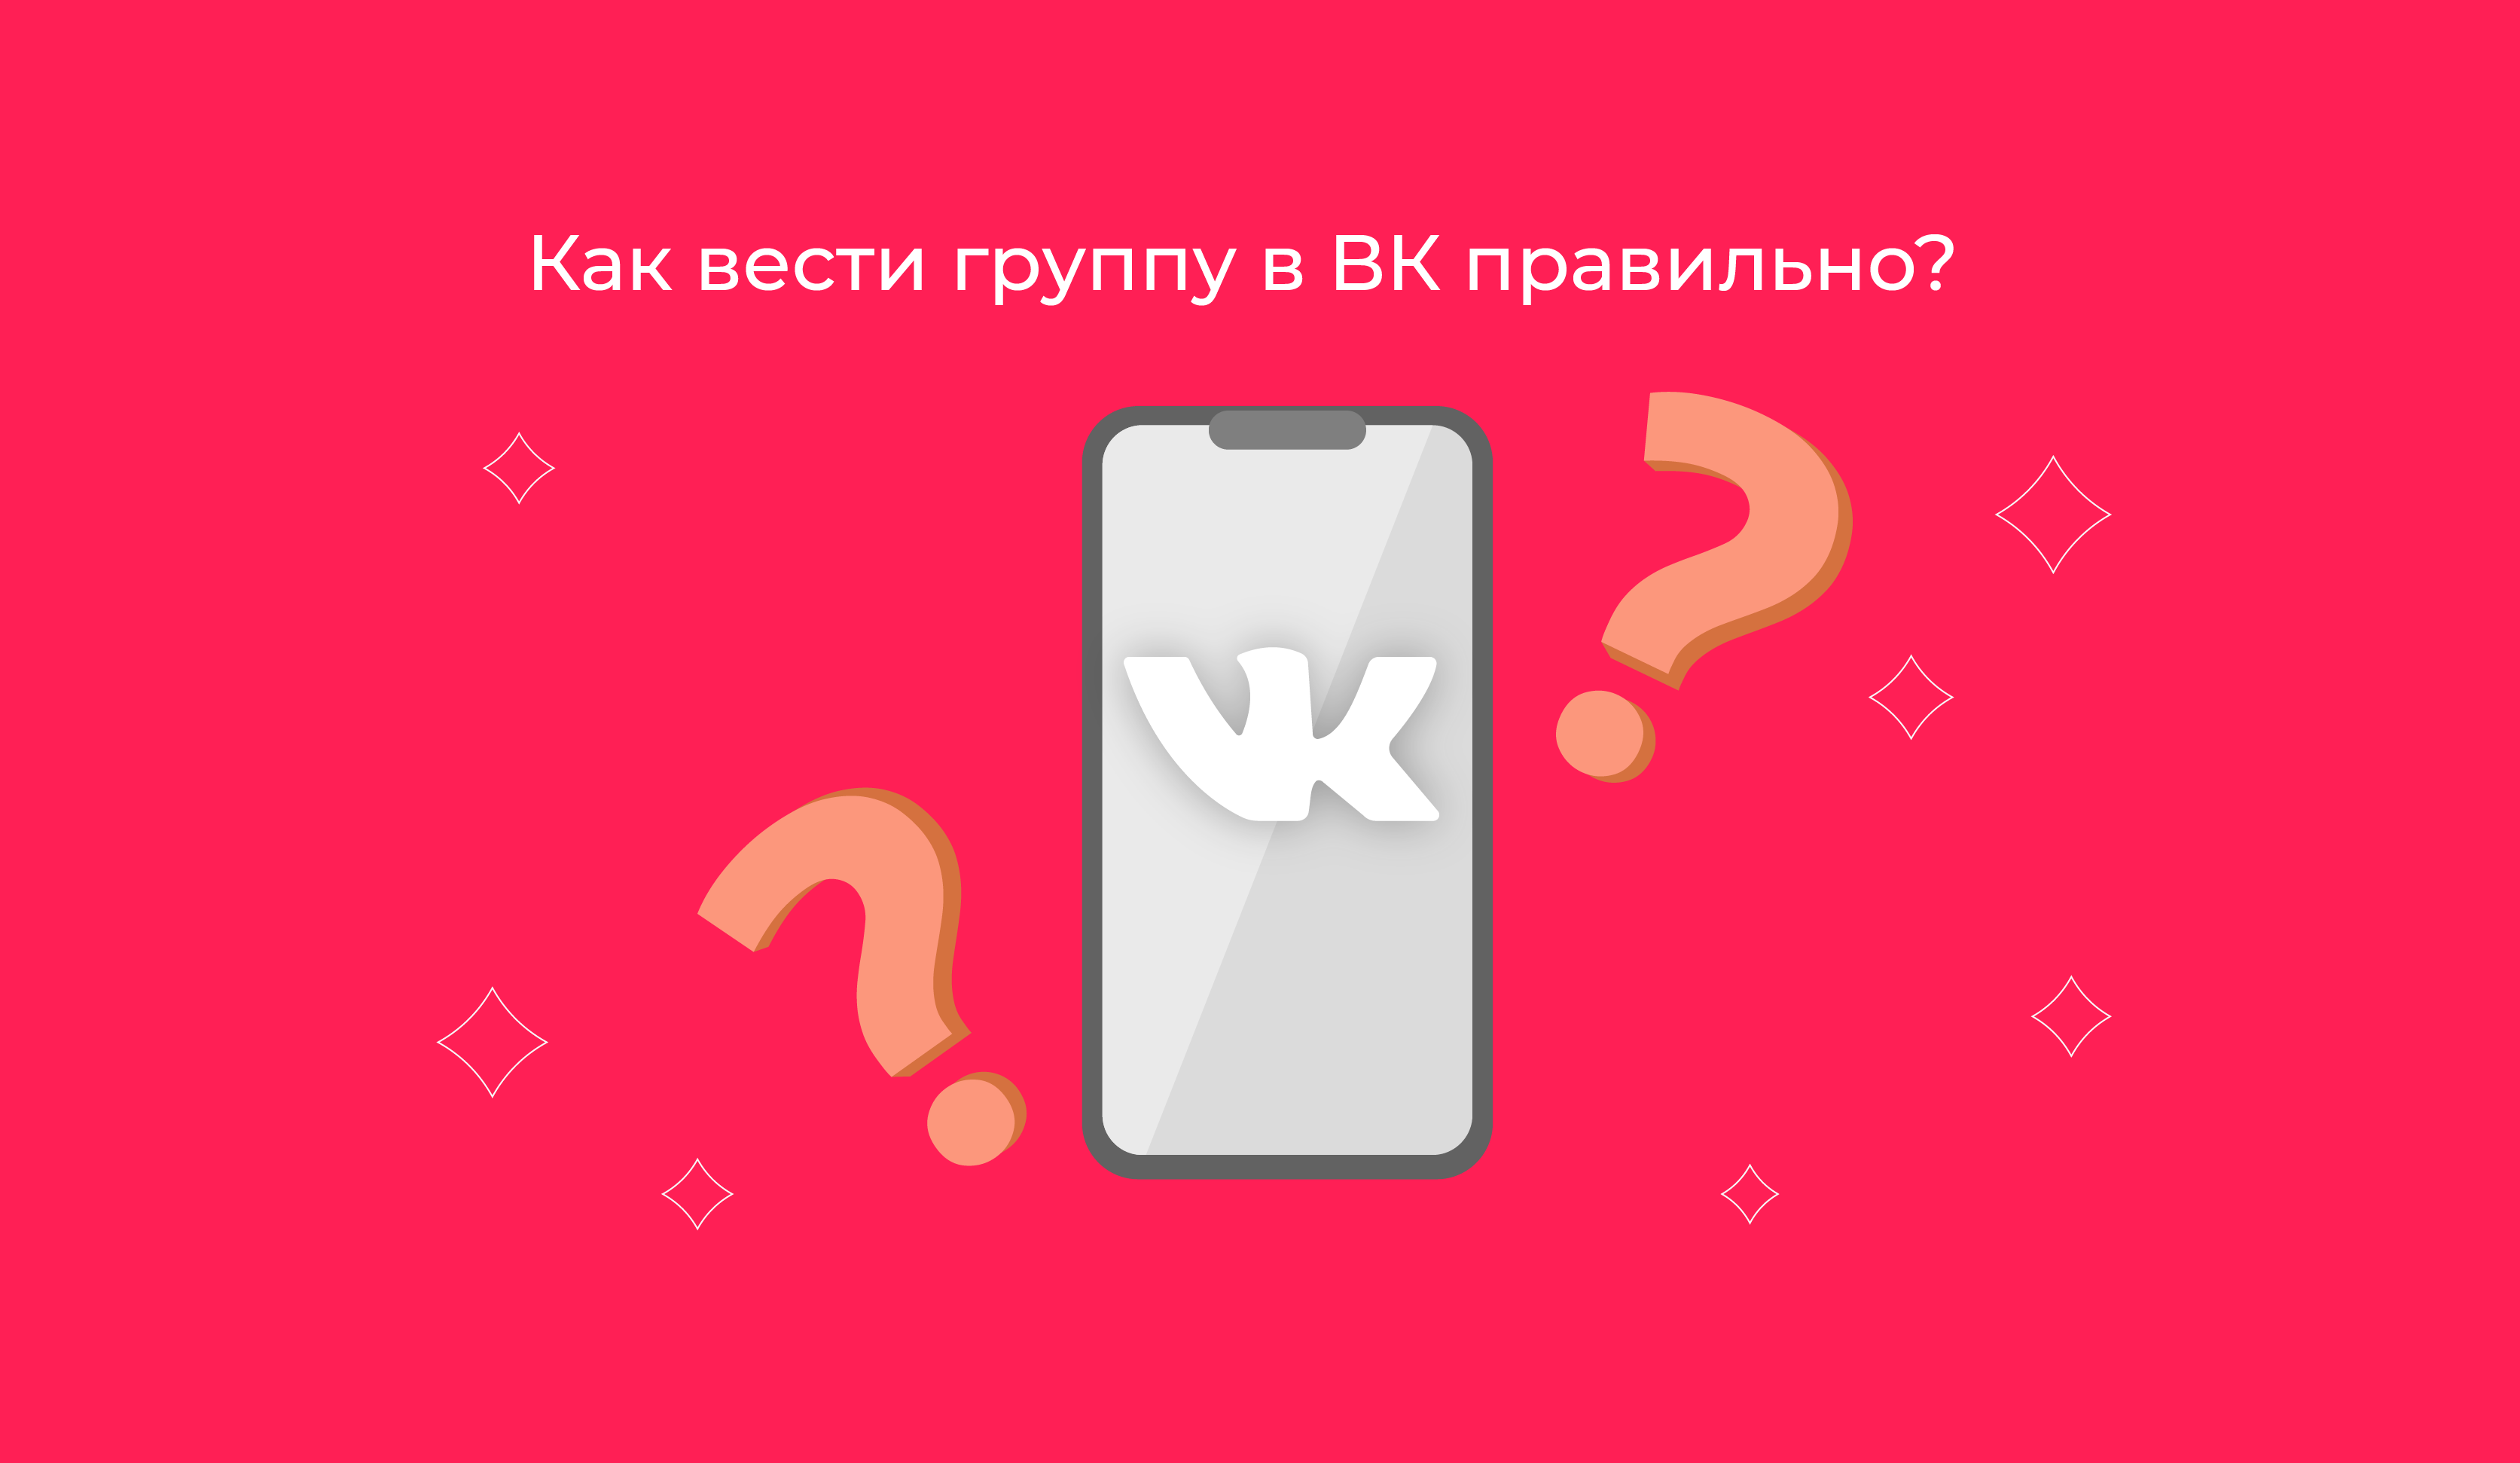 Почему сегодня ВКонтакте показывает плохие результаты работы